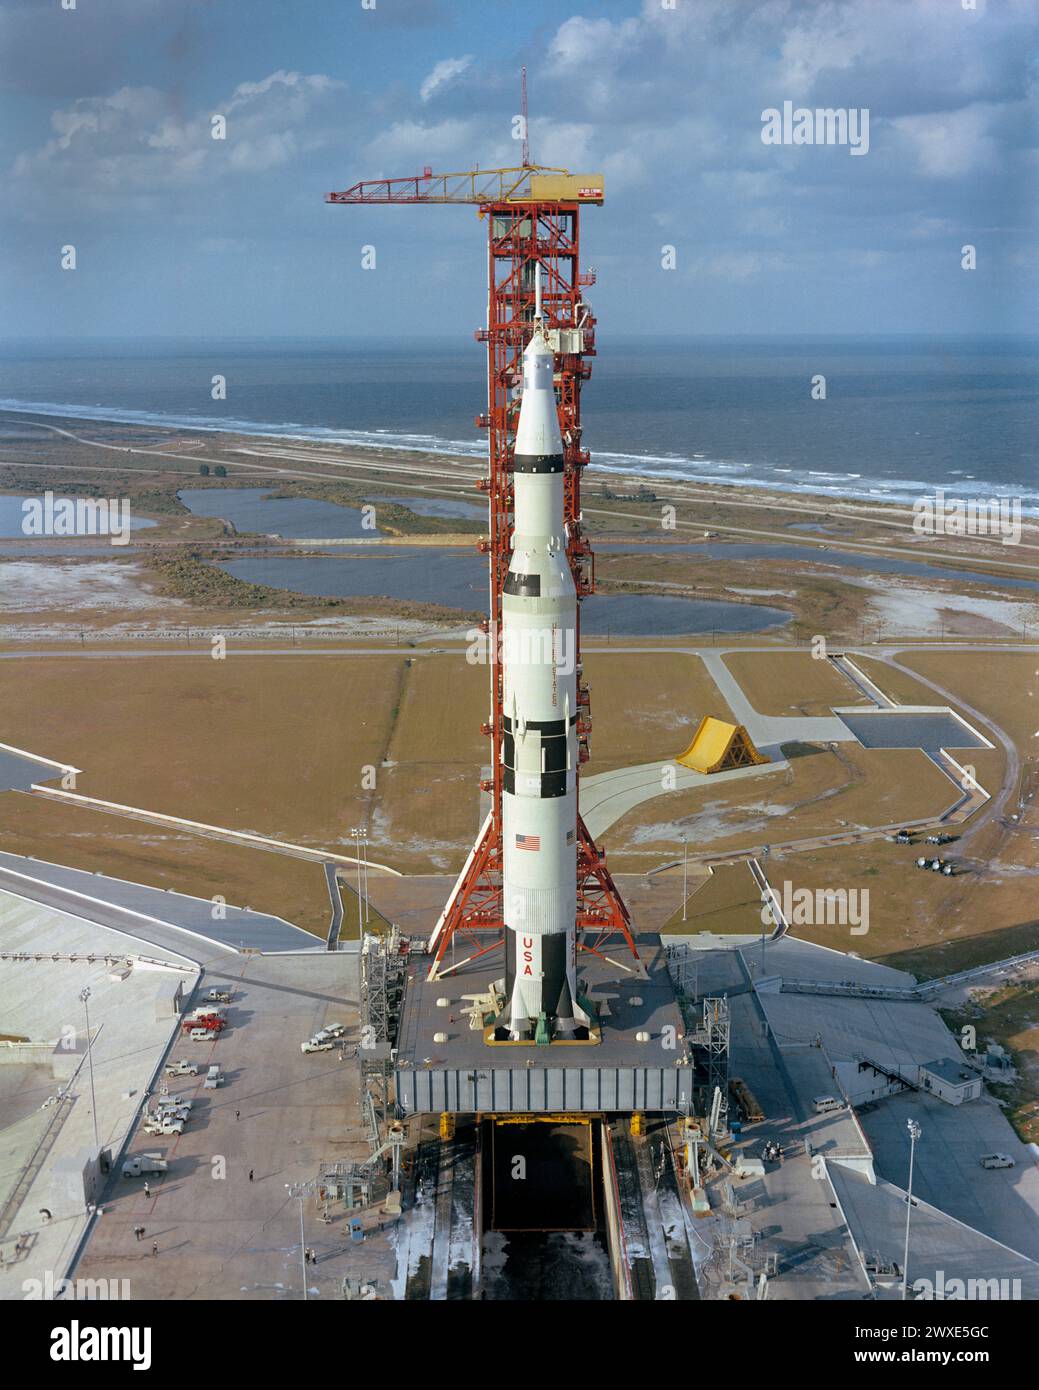 Apollo/Saturn V auf der Startfläche Hochwinkelansicht von Pad A, Launch Complex 39, Kennedy Space Center, zeigt die Apollo 4 Raumsonde 017/Saturn 501 unbemannt, die Erdumlaufbahn wird für den Start vorbereitet. Die riesigen 363 m Das Raumfahrzeug Tall Apollo/Saturn V wurde am 9. November 1967 um 7:00:01 Uhr EST gestartet. Ein optimiertes NASA-Bild. Quelle: NASA Stockfoto